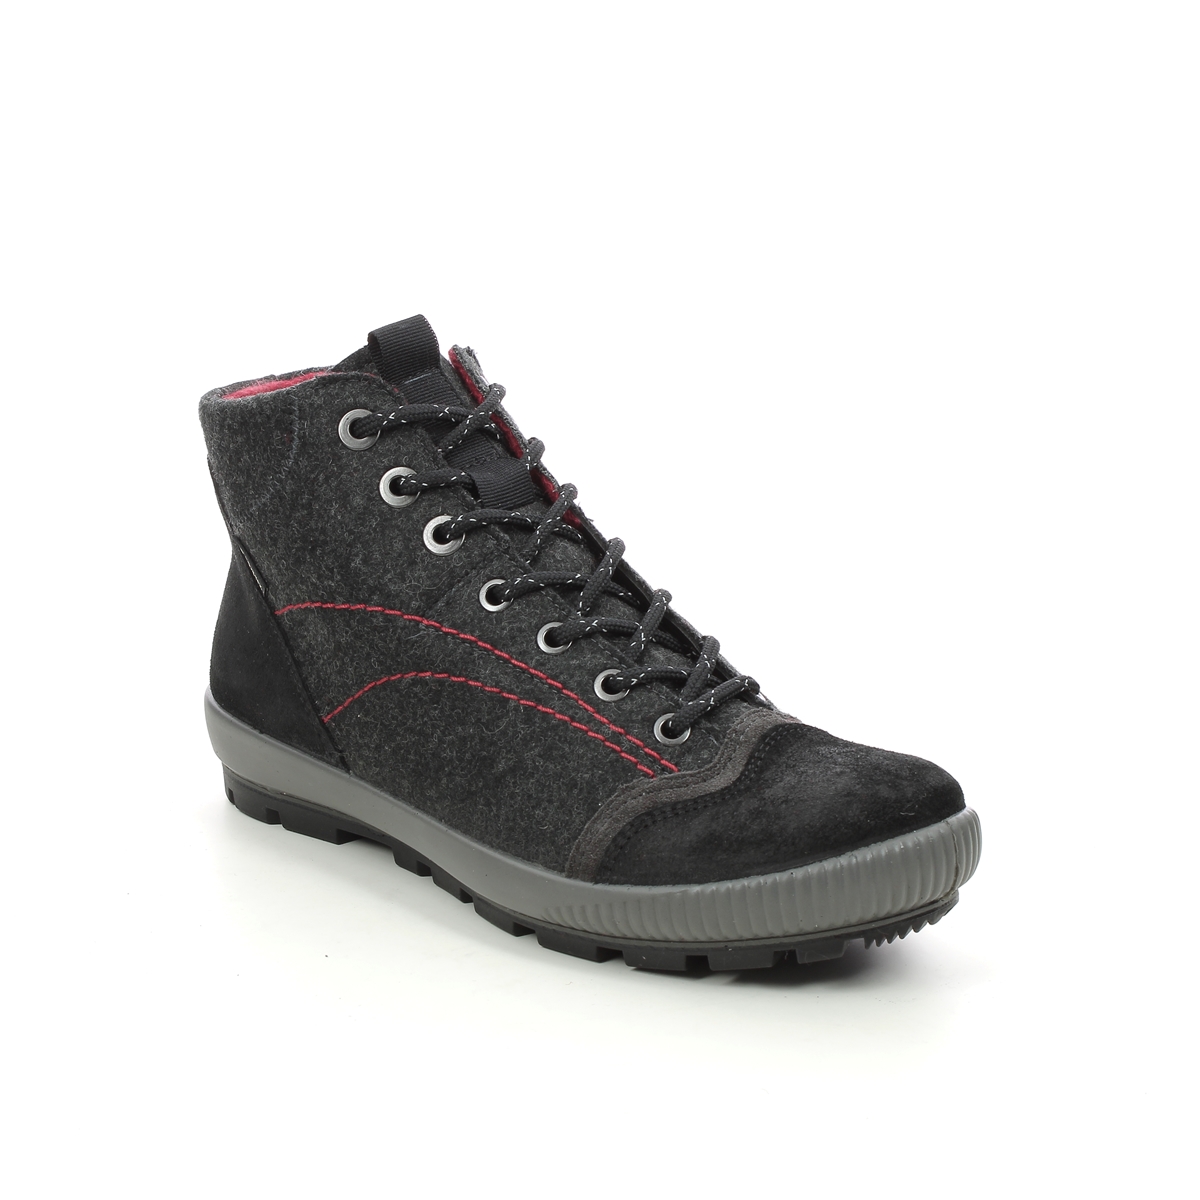 Legero Tanaro Gtx Trek Black Suede Womens Walking Boots 2000123-0000 In Size 6.5 In Plain Black Suede